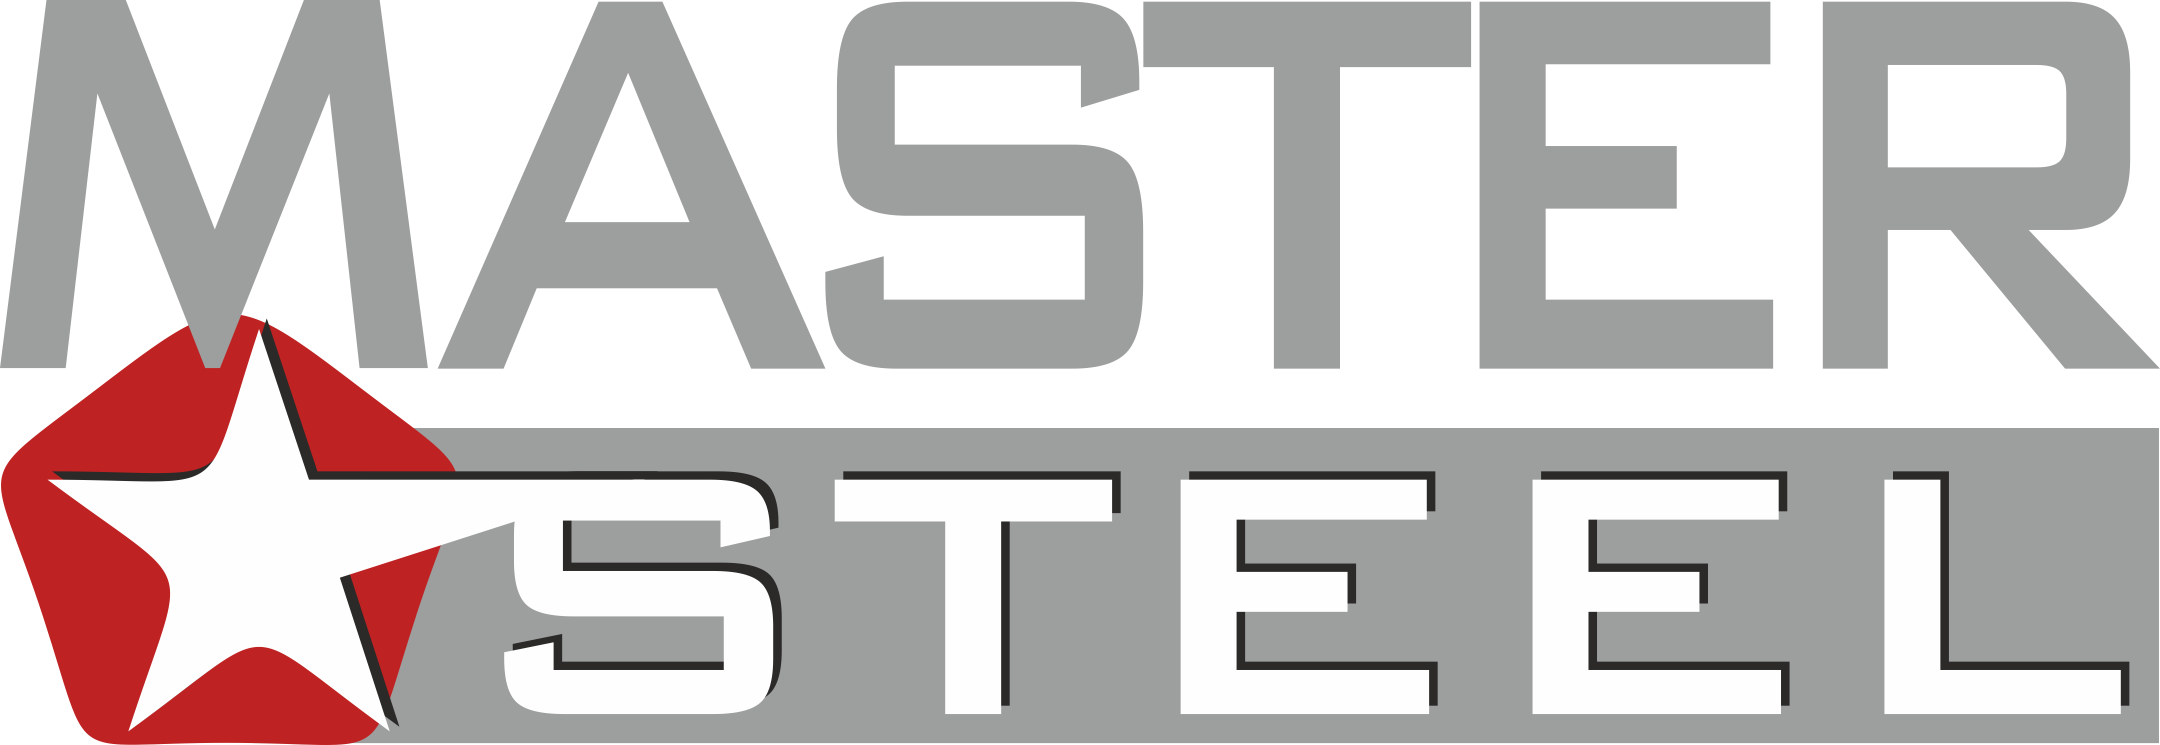 Master steel. ООО Мастерс. Steel Master качество в деталях. Сталь-мастер производитель. Steel Master logo.